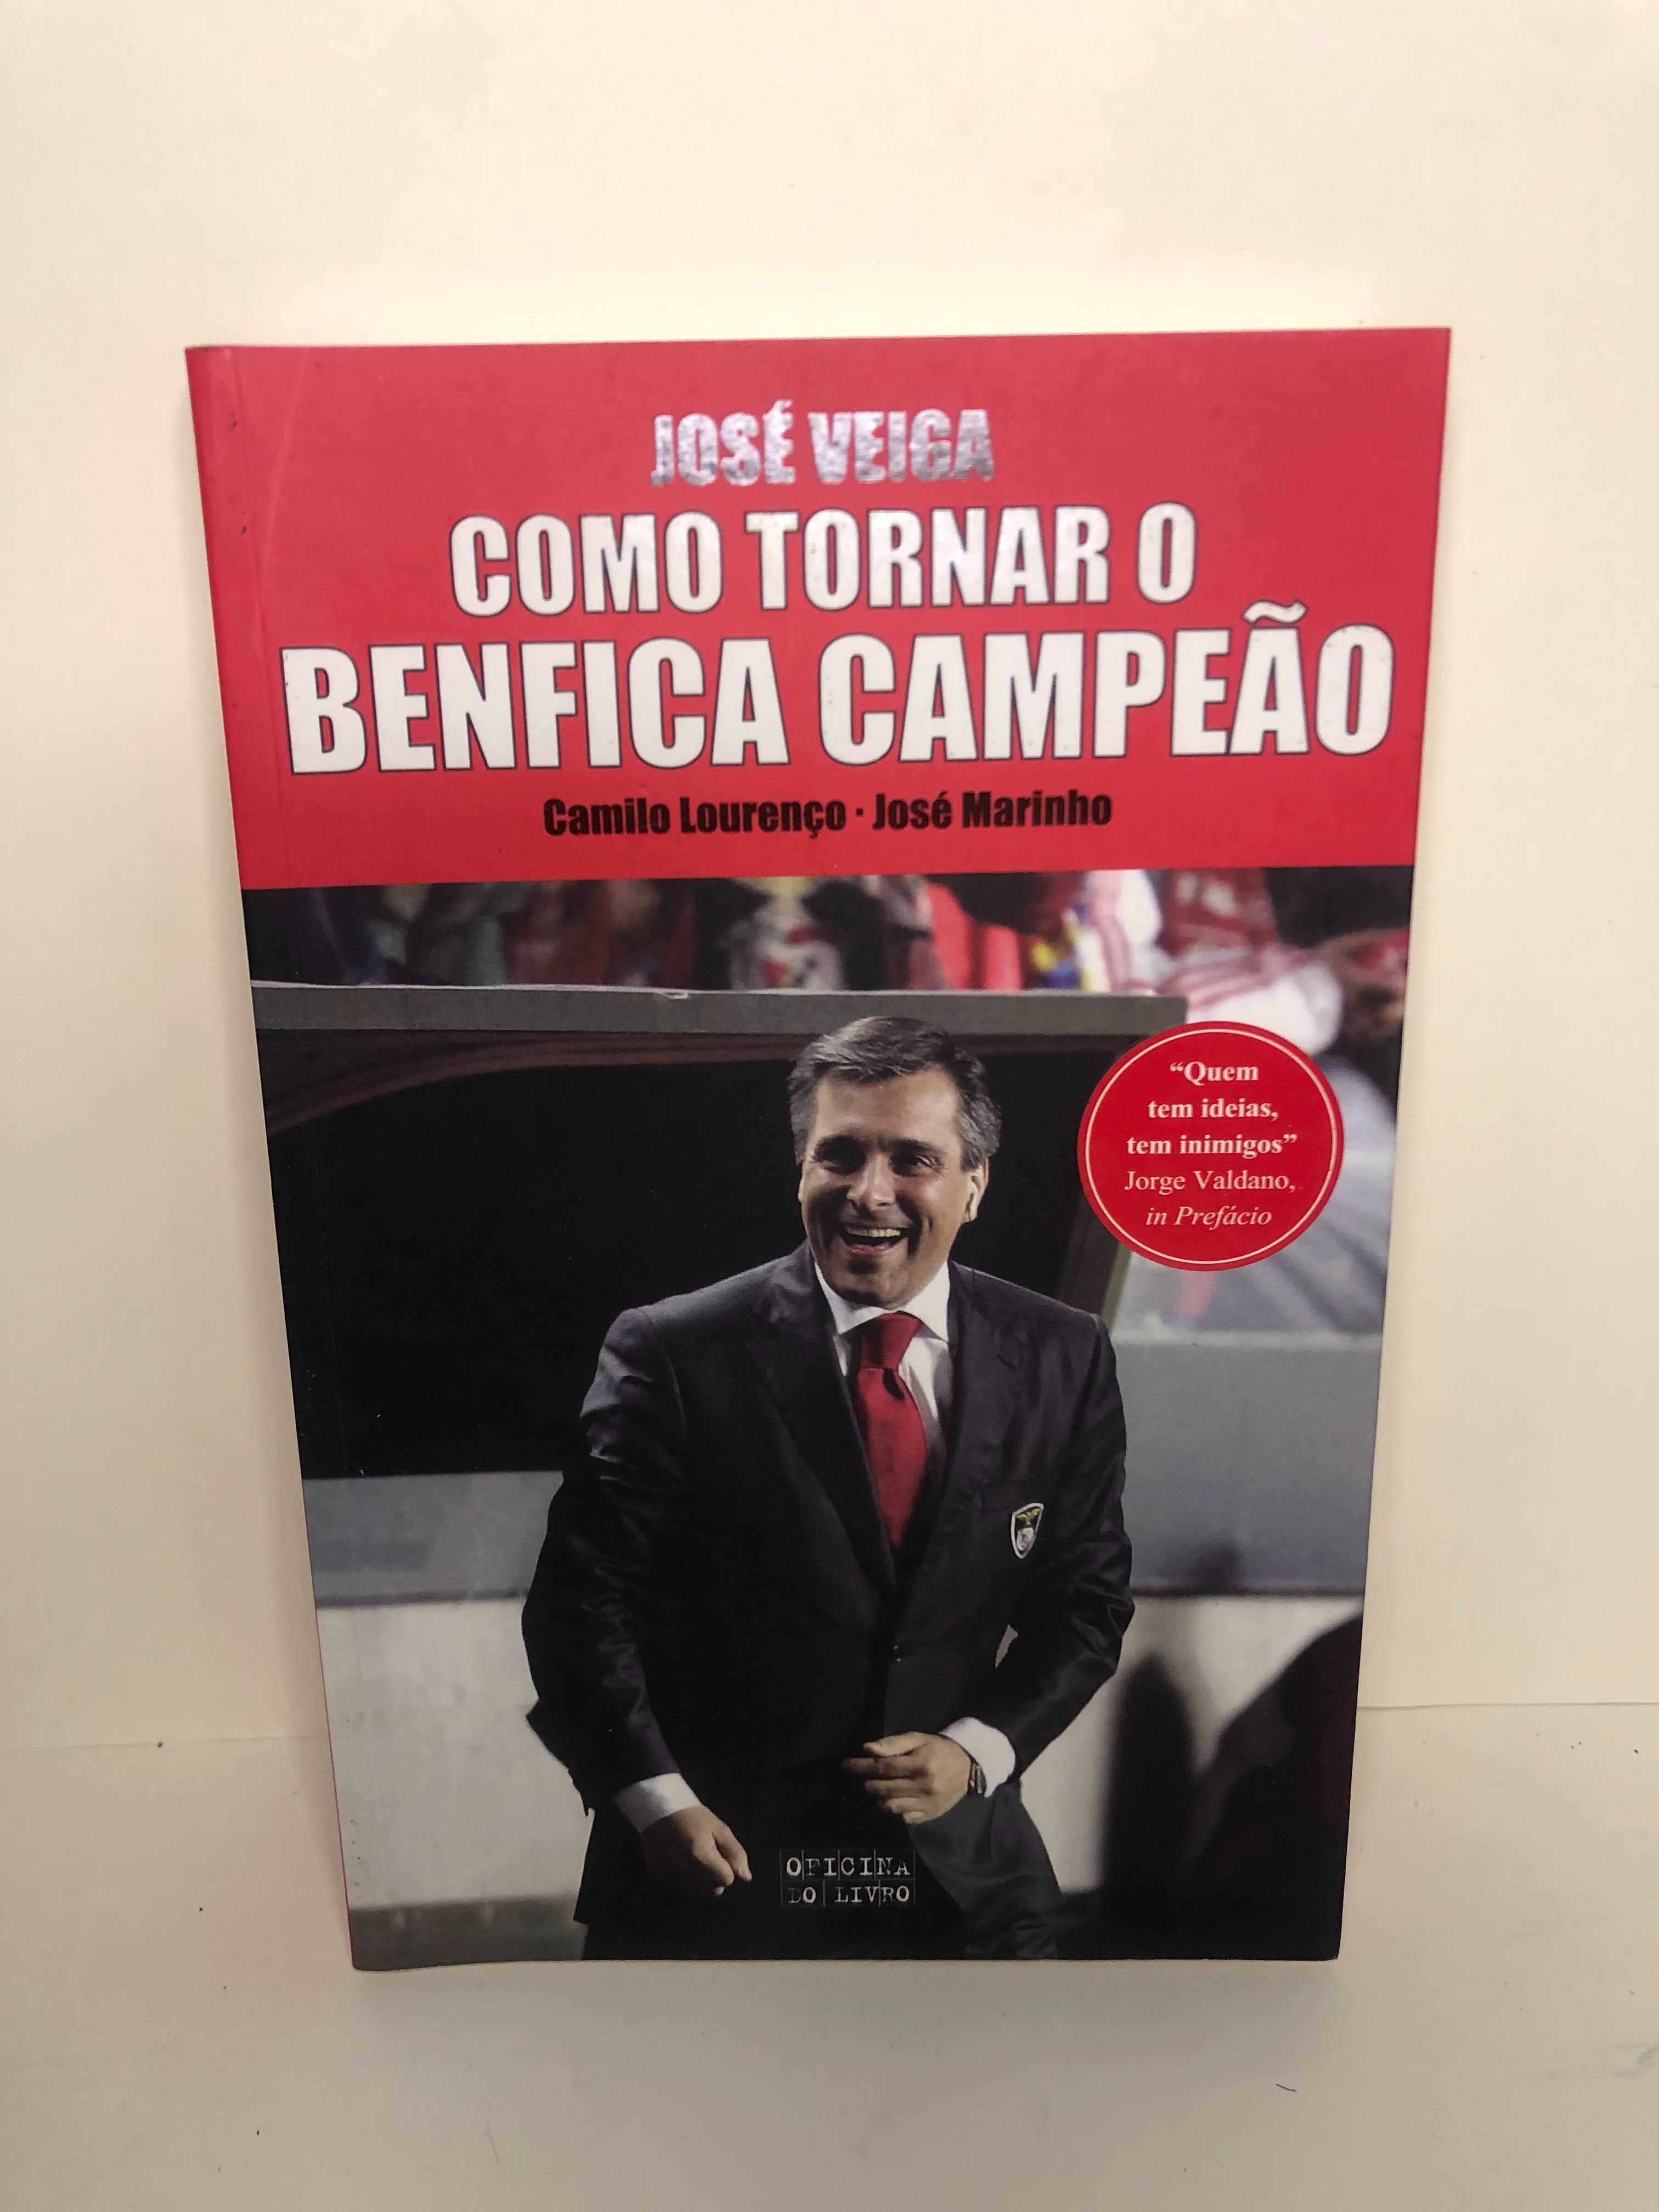 José Veiga Como Tornar o Benfica Campeão